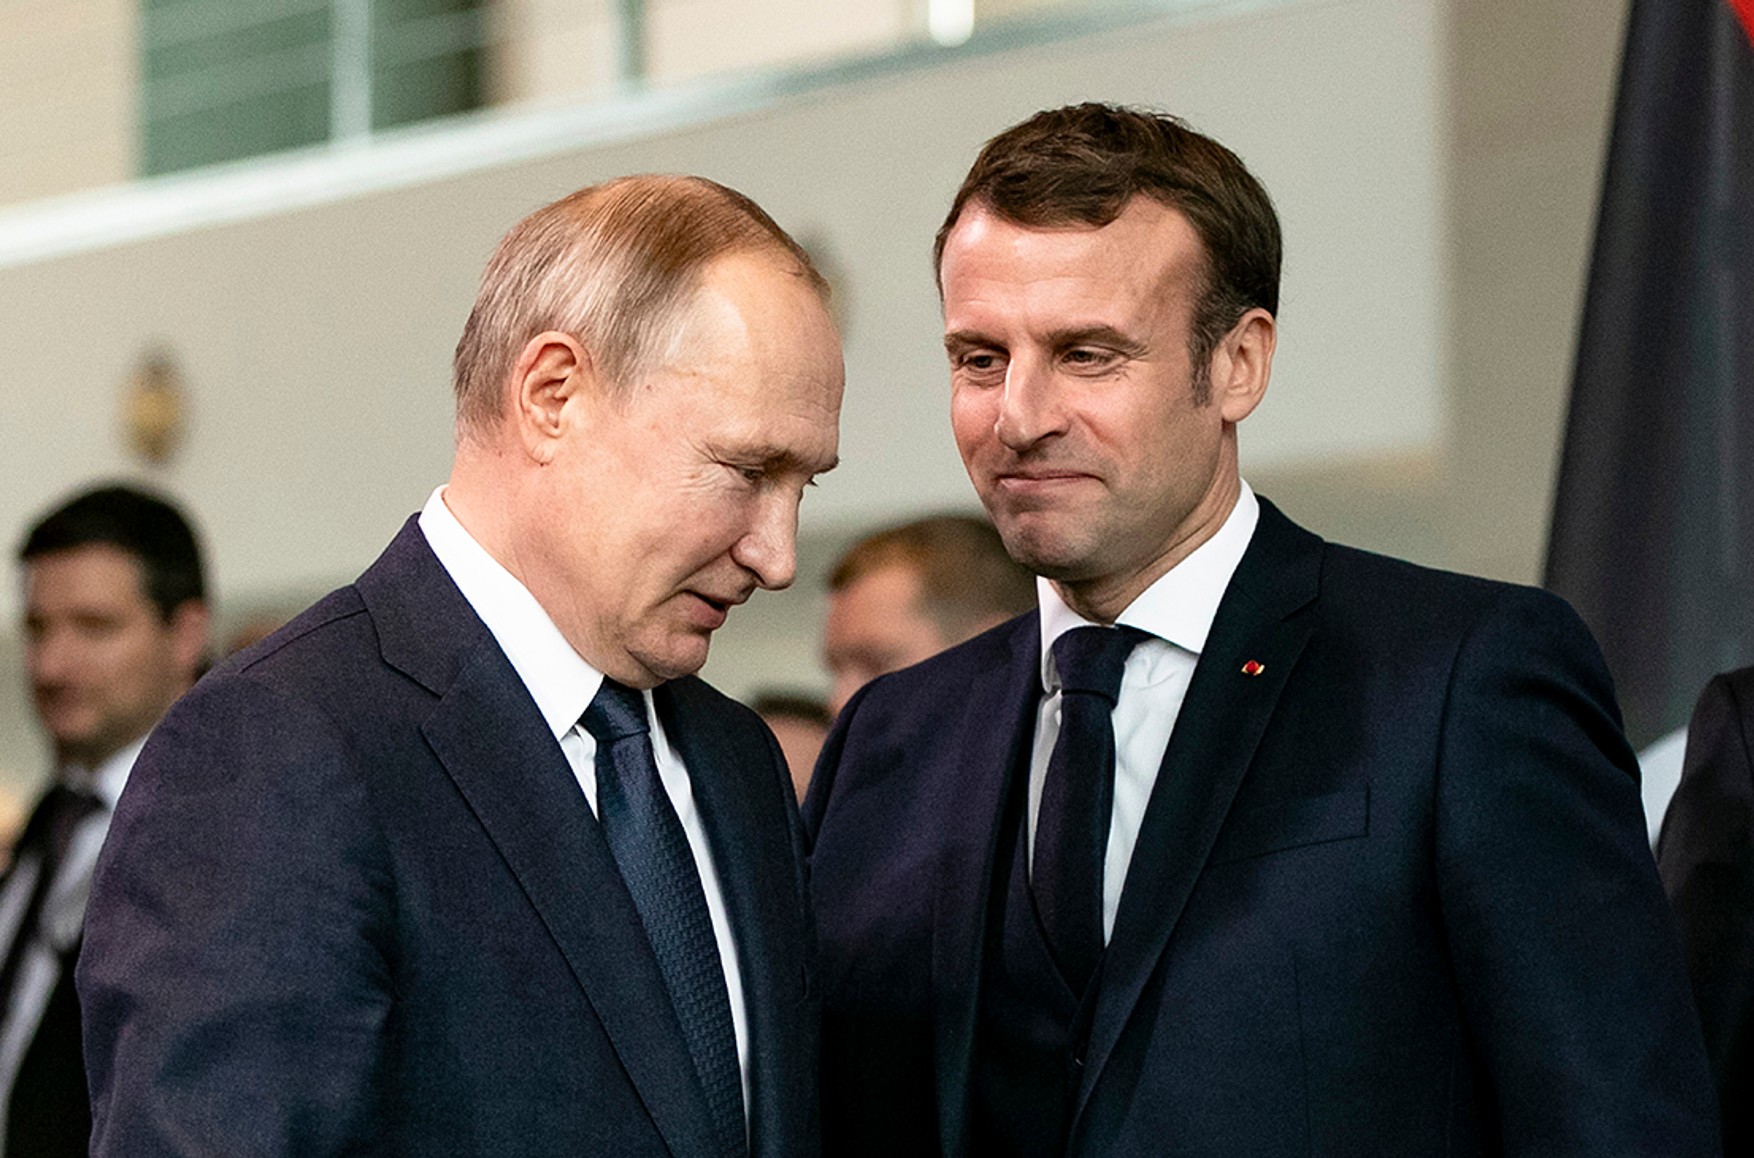 Макрон провів телефонну розмову з Путіним, в ході якого закликав звільнити Навального. У повідомленні Кремля про це замовчується